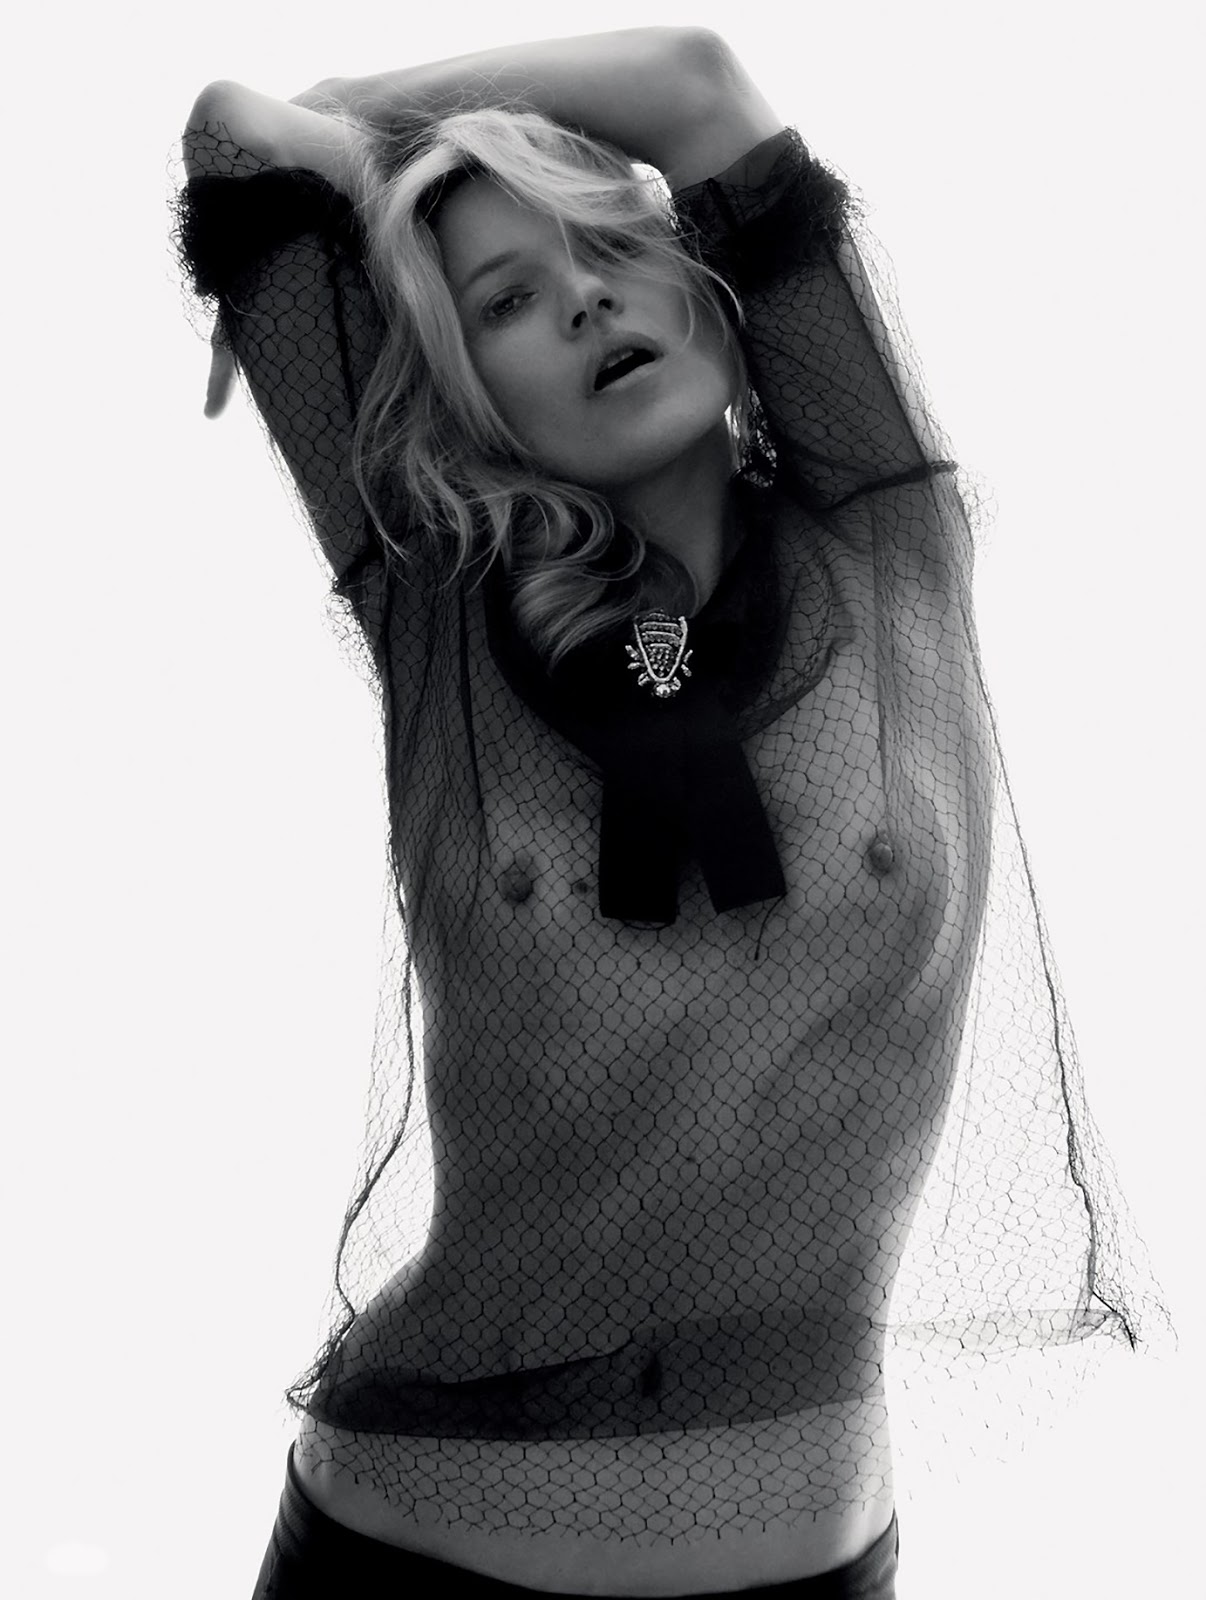 Легенда Кейт Мосс в фотосессии для журнала "Love" осень / зима 20...